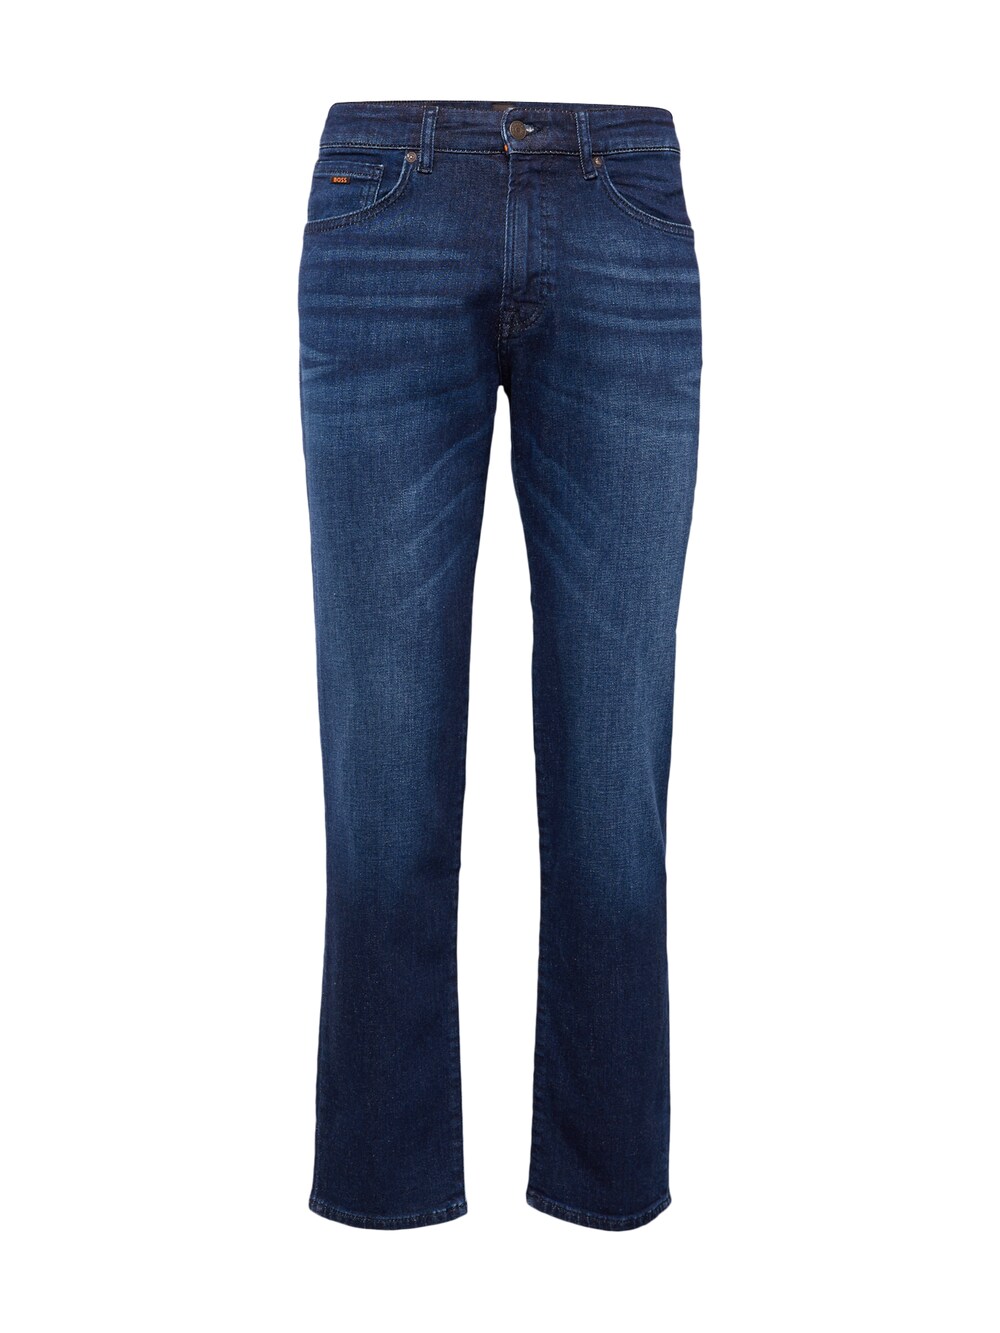 Обычные джинсы BOSS Orange Re.Maine, темно-синий толстовка boss black seeger 280 ps темно синий темно синий